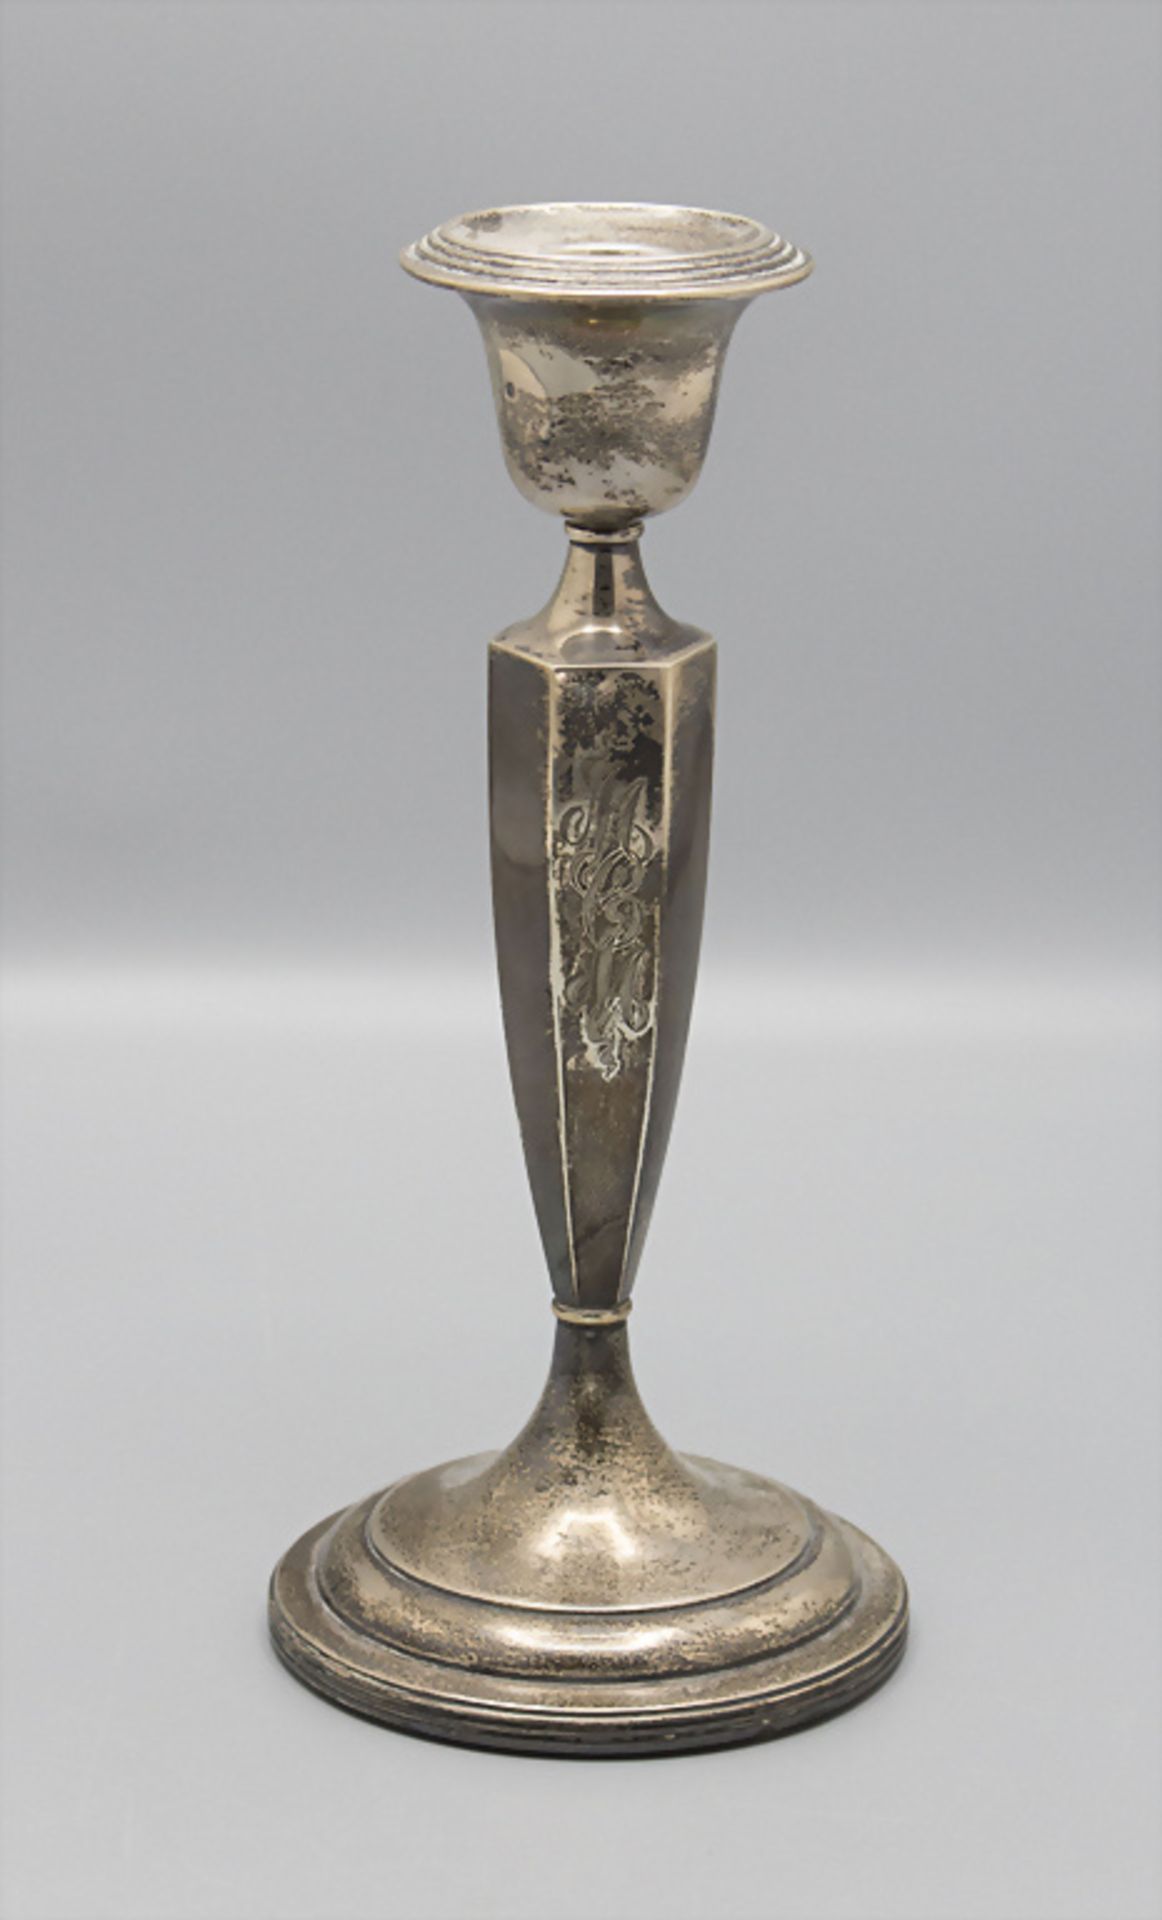 Silber Kerzenleuchter / A silver candlestick, R. Wallace & Sons Mfg. Co., USA, 20. Jh.